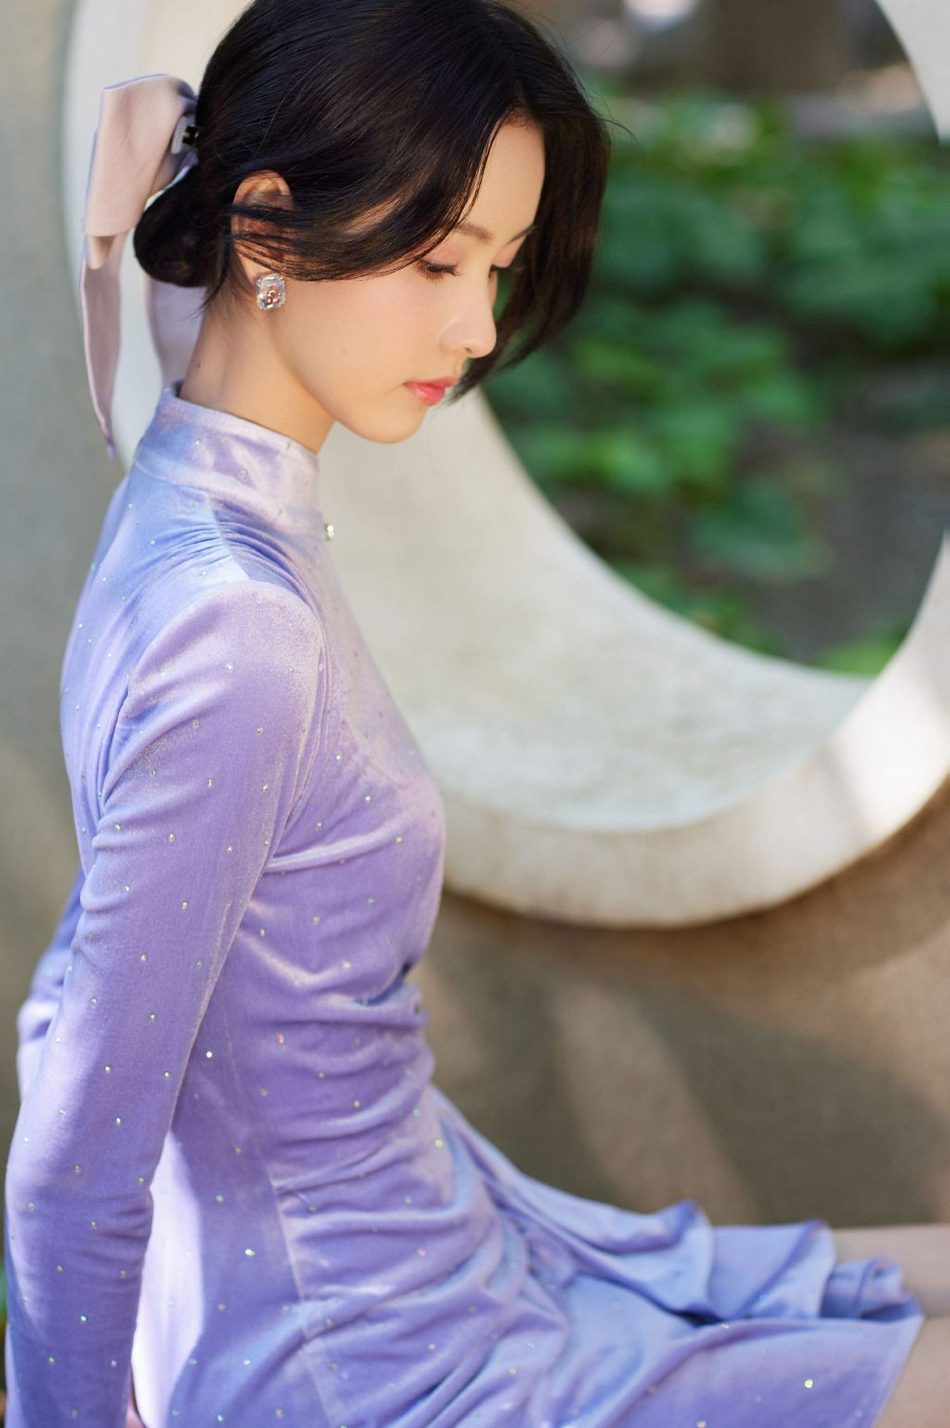 陈都灵紫色丝绒短裙大秀身材写真  第2张